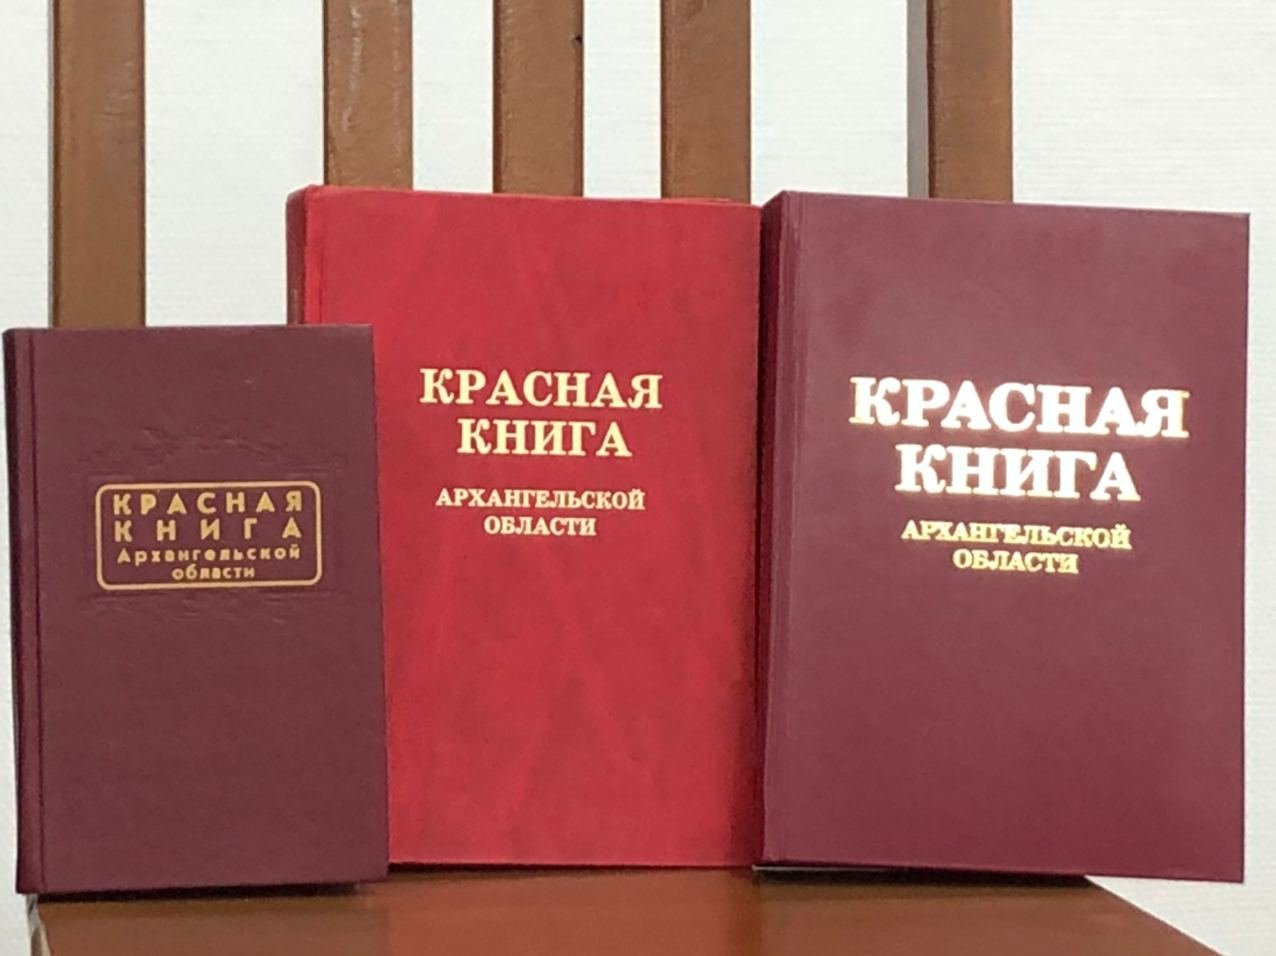 Красная книга том 1. Красная книга. Krassnaya kniqa. Красная книга обложка. Виды красных книг.